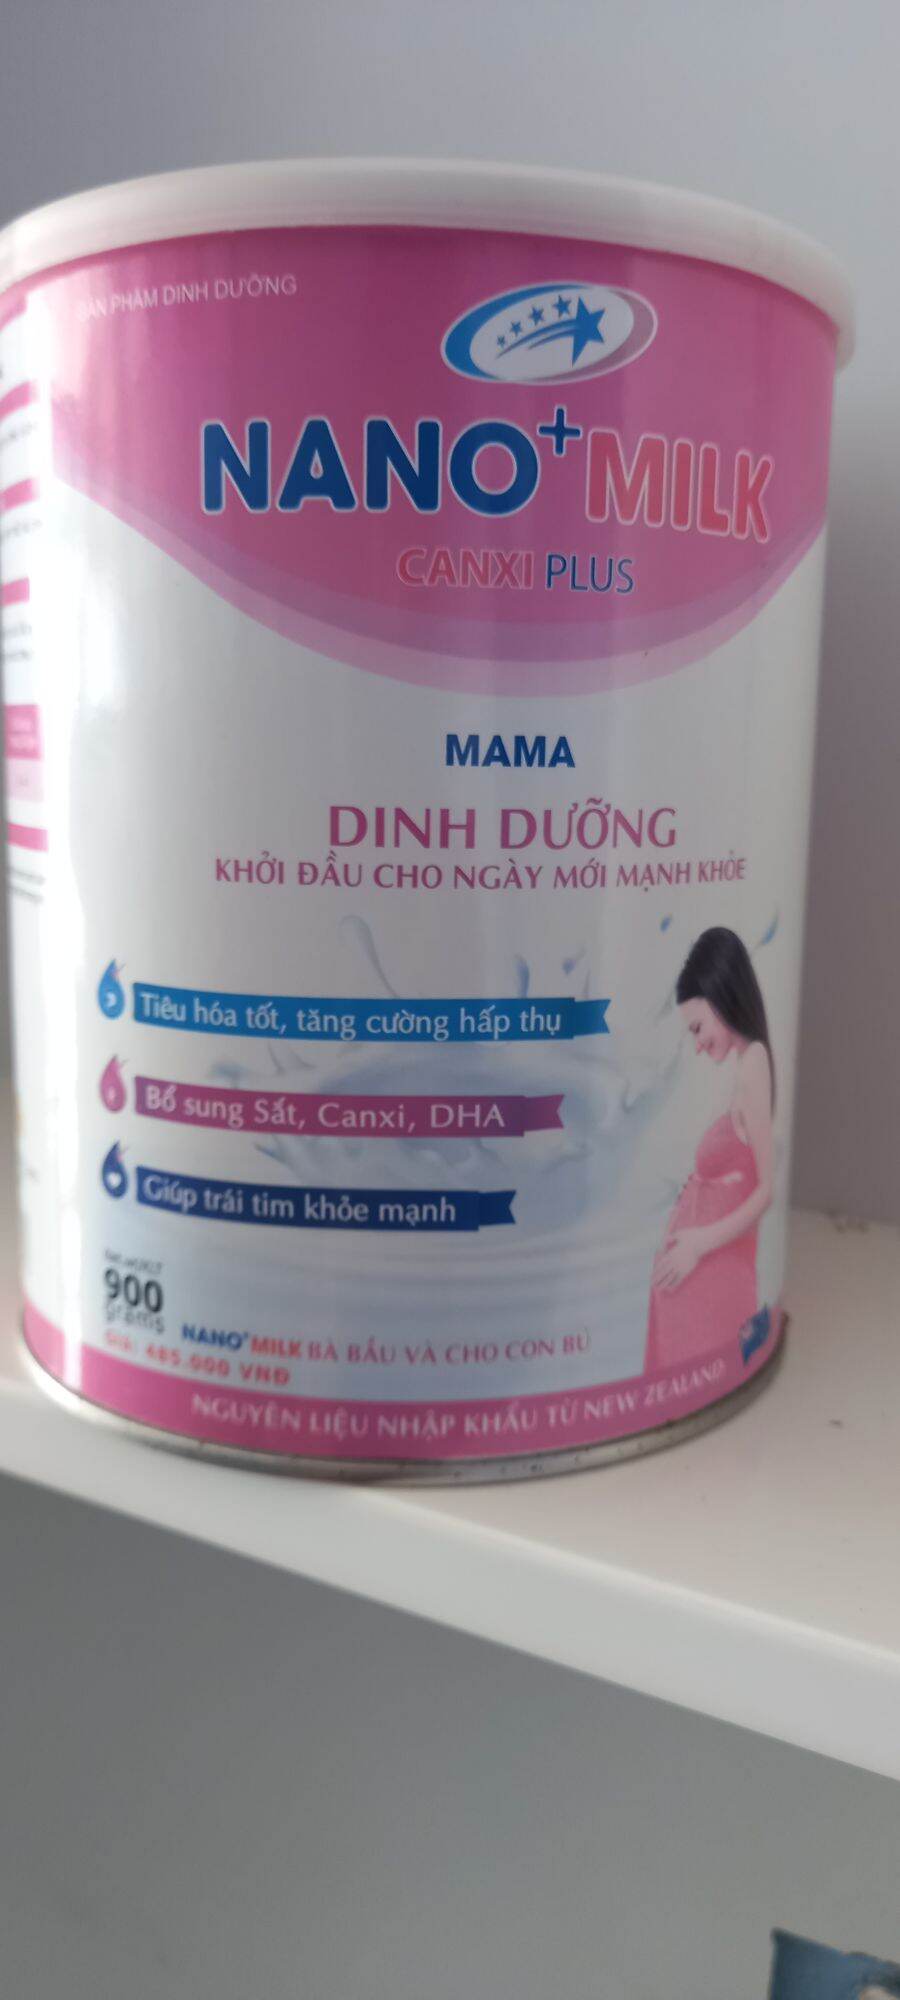 Sữa Nano milk mama 900g. Tiêu hóa tốt, tăng cường hấp thụ. Bổ sung sắt, canxi, DHA. Giúp trái tim khỏe mạnh.